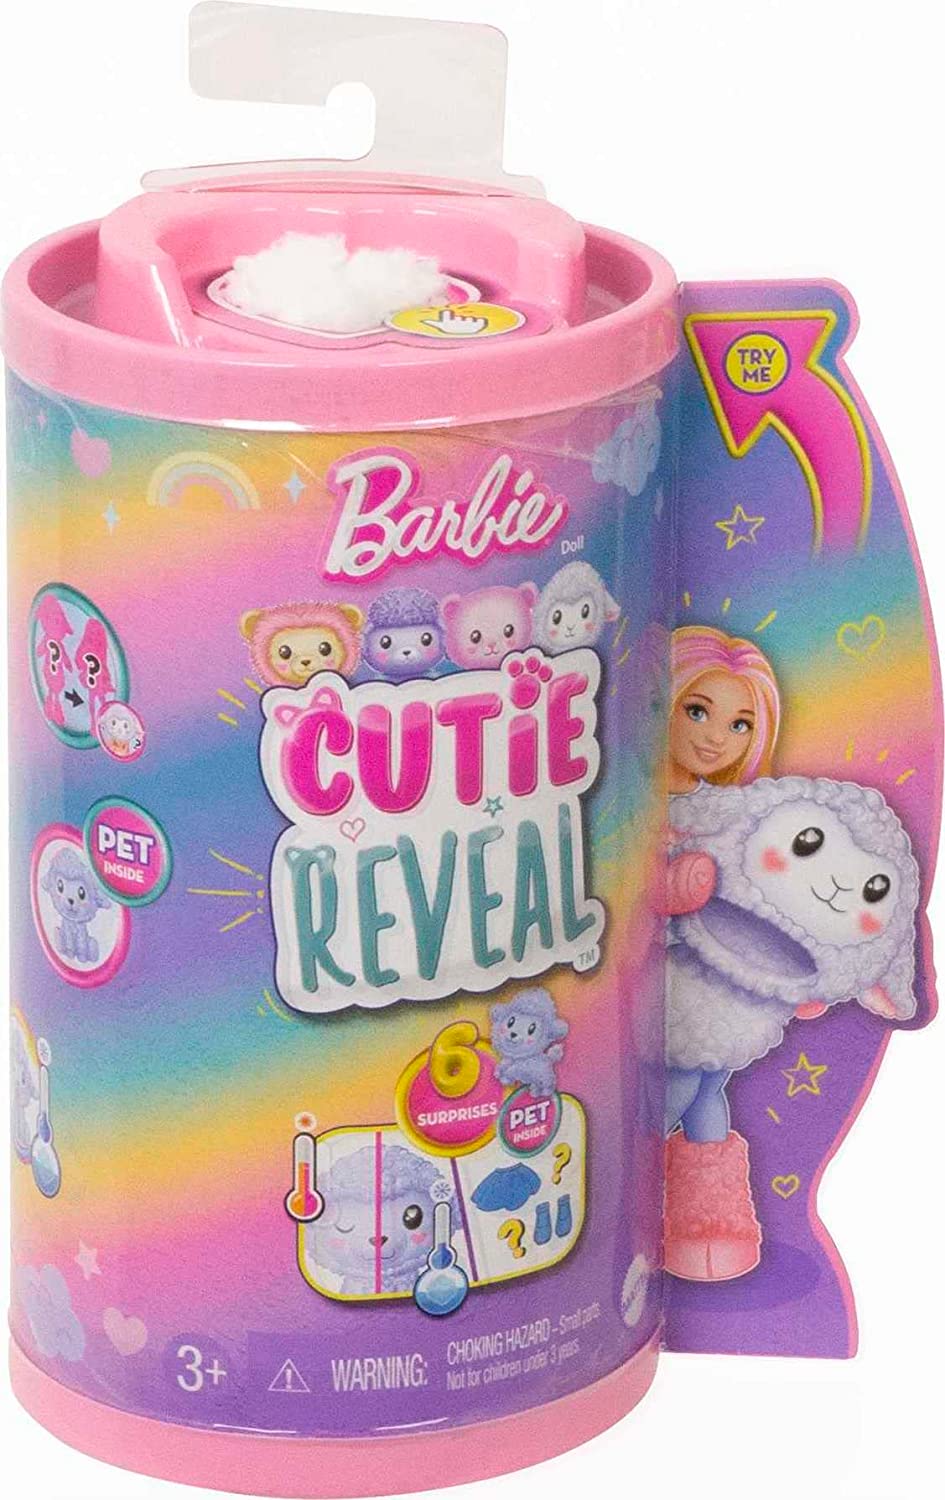 Barbie Cutie Reveal Poodle